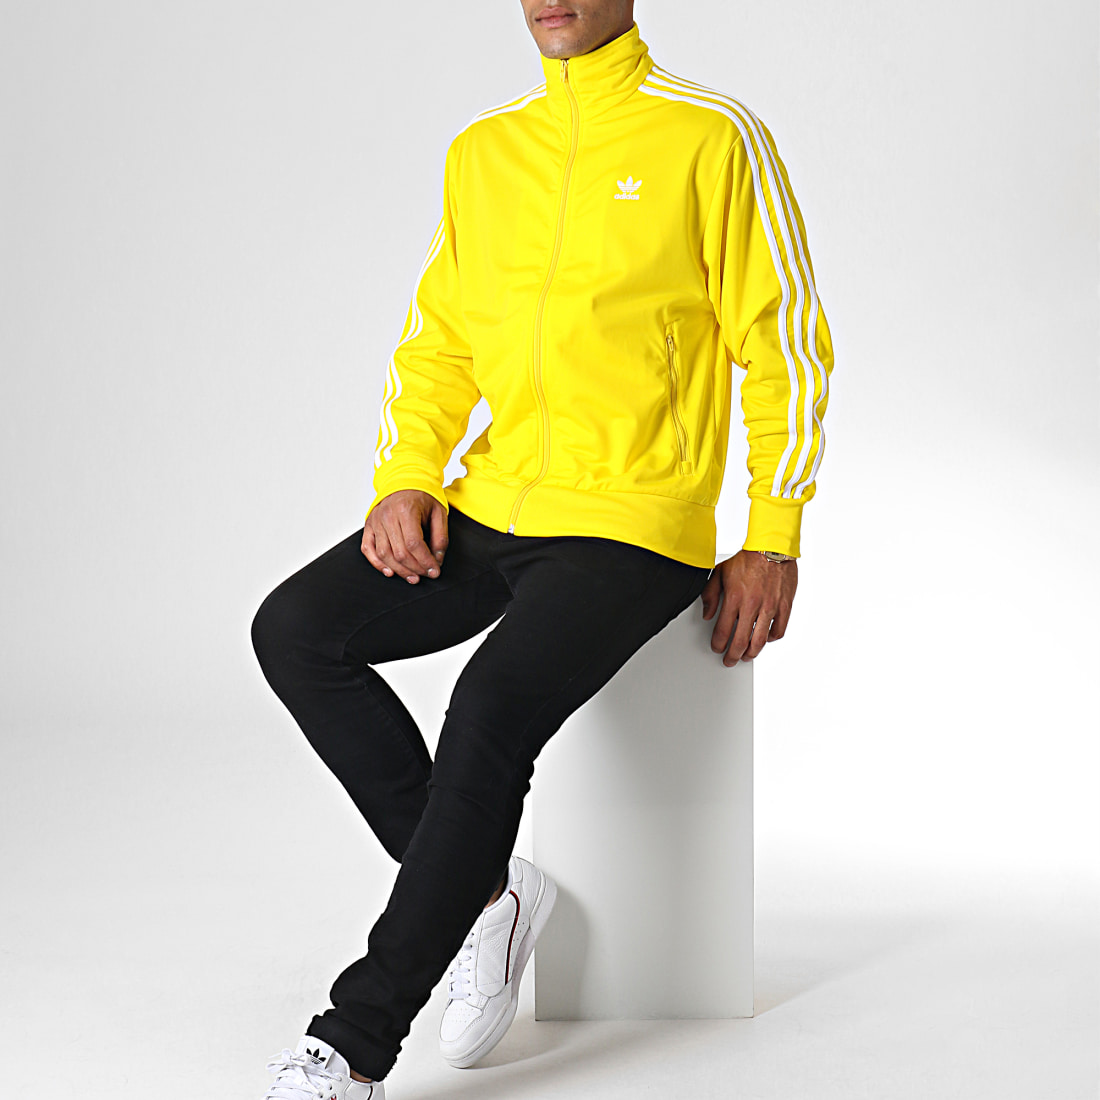 Sweatshirts Adidas Originals Jacket Firebird The Firm Shop | uniquesamay.com